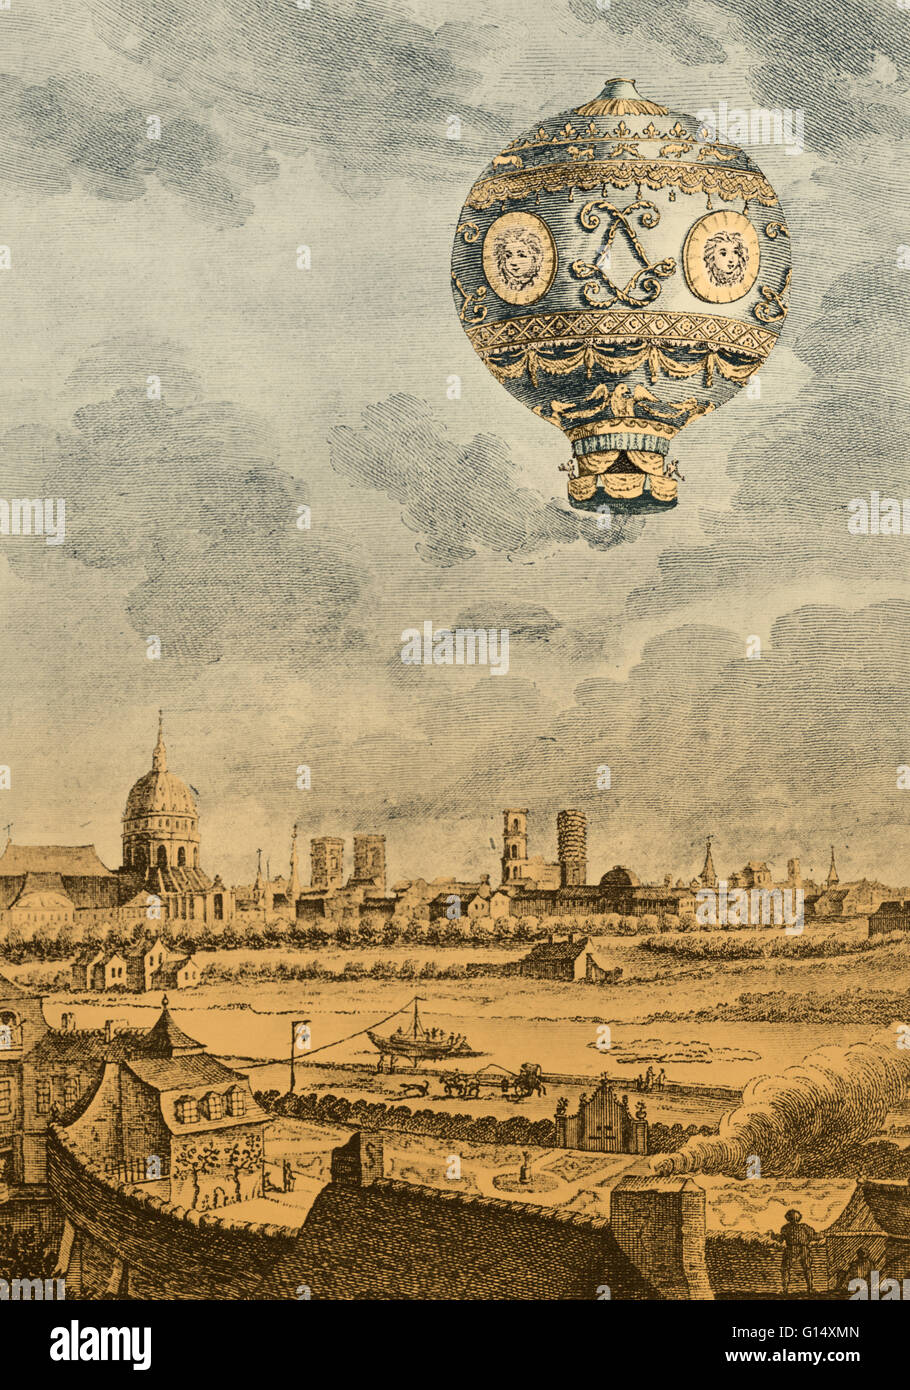 La guerra de los globos. Joseph-michel-montgolfier-agosto-26-1740-junio-26-1810-y-jacques-etienne-montgolfier-del-6-de-enero-de-1745-2-de-agosto-de-1799-fueron-los-inventores-del-estilo-montgolfiere-en-globo-de-aire-caliente-el-globo-aerostatique-fue-joseph-quien-primero-contemplaba-la-construccion-g14xmn